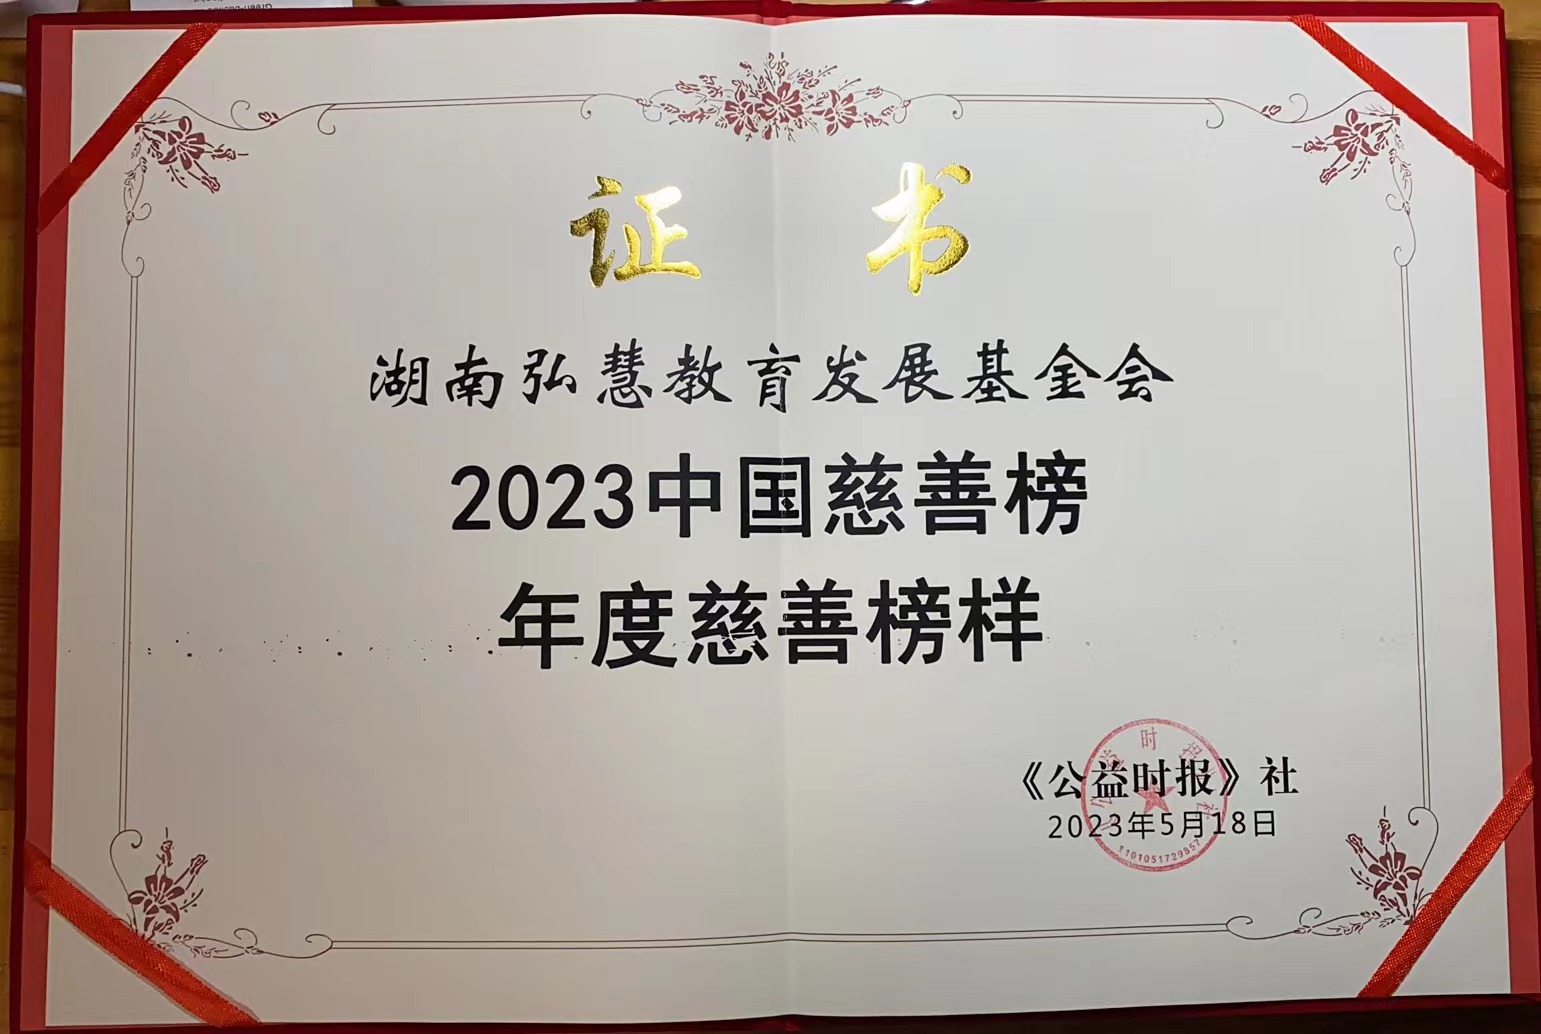 2023中国慈善榜揭榜 弘慧基金会荣膺“年度慈善榜样”称号